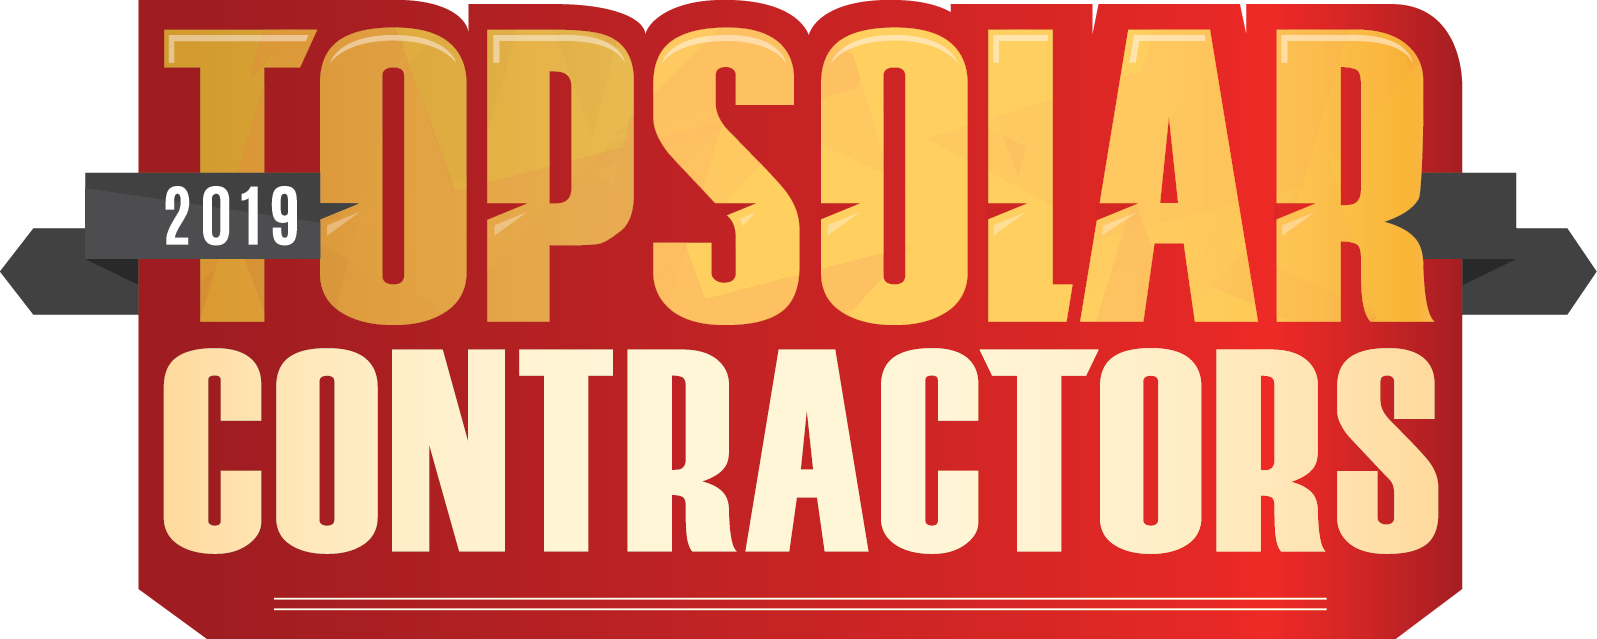 Solar Power World 2019 Top Contractors